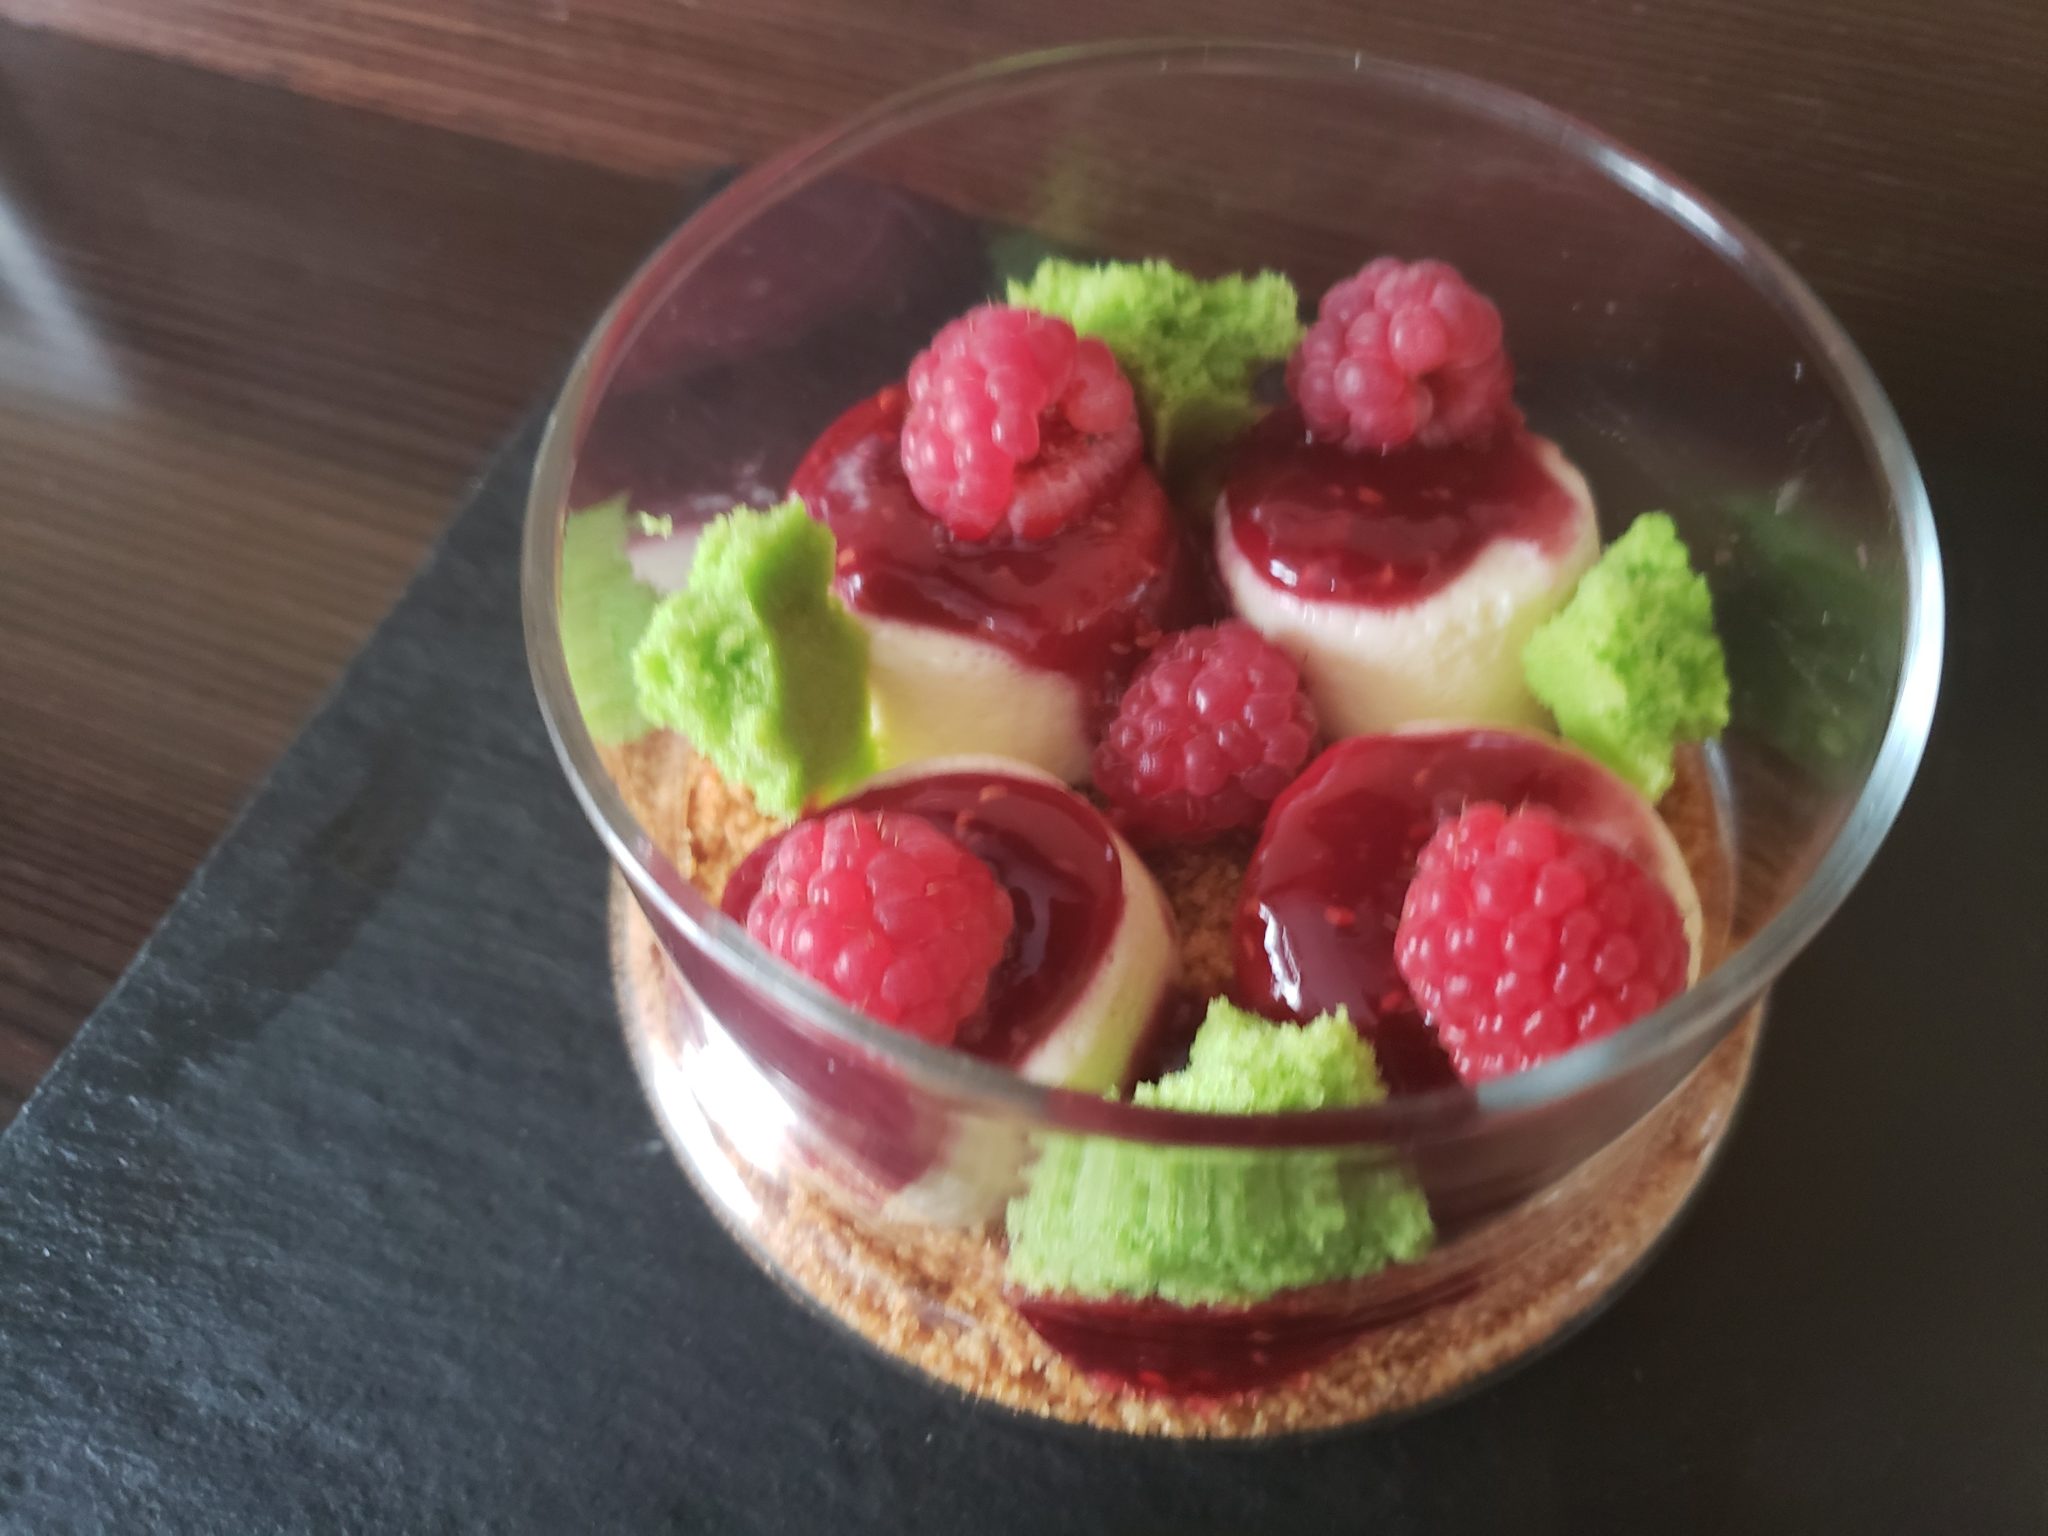 a dessert in a glass bowl